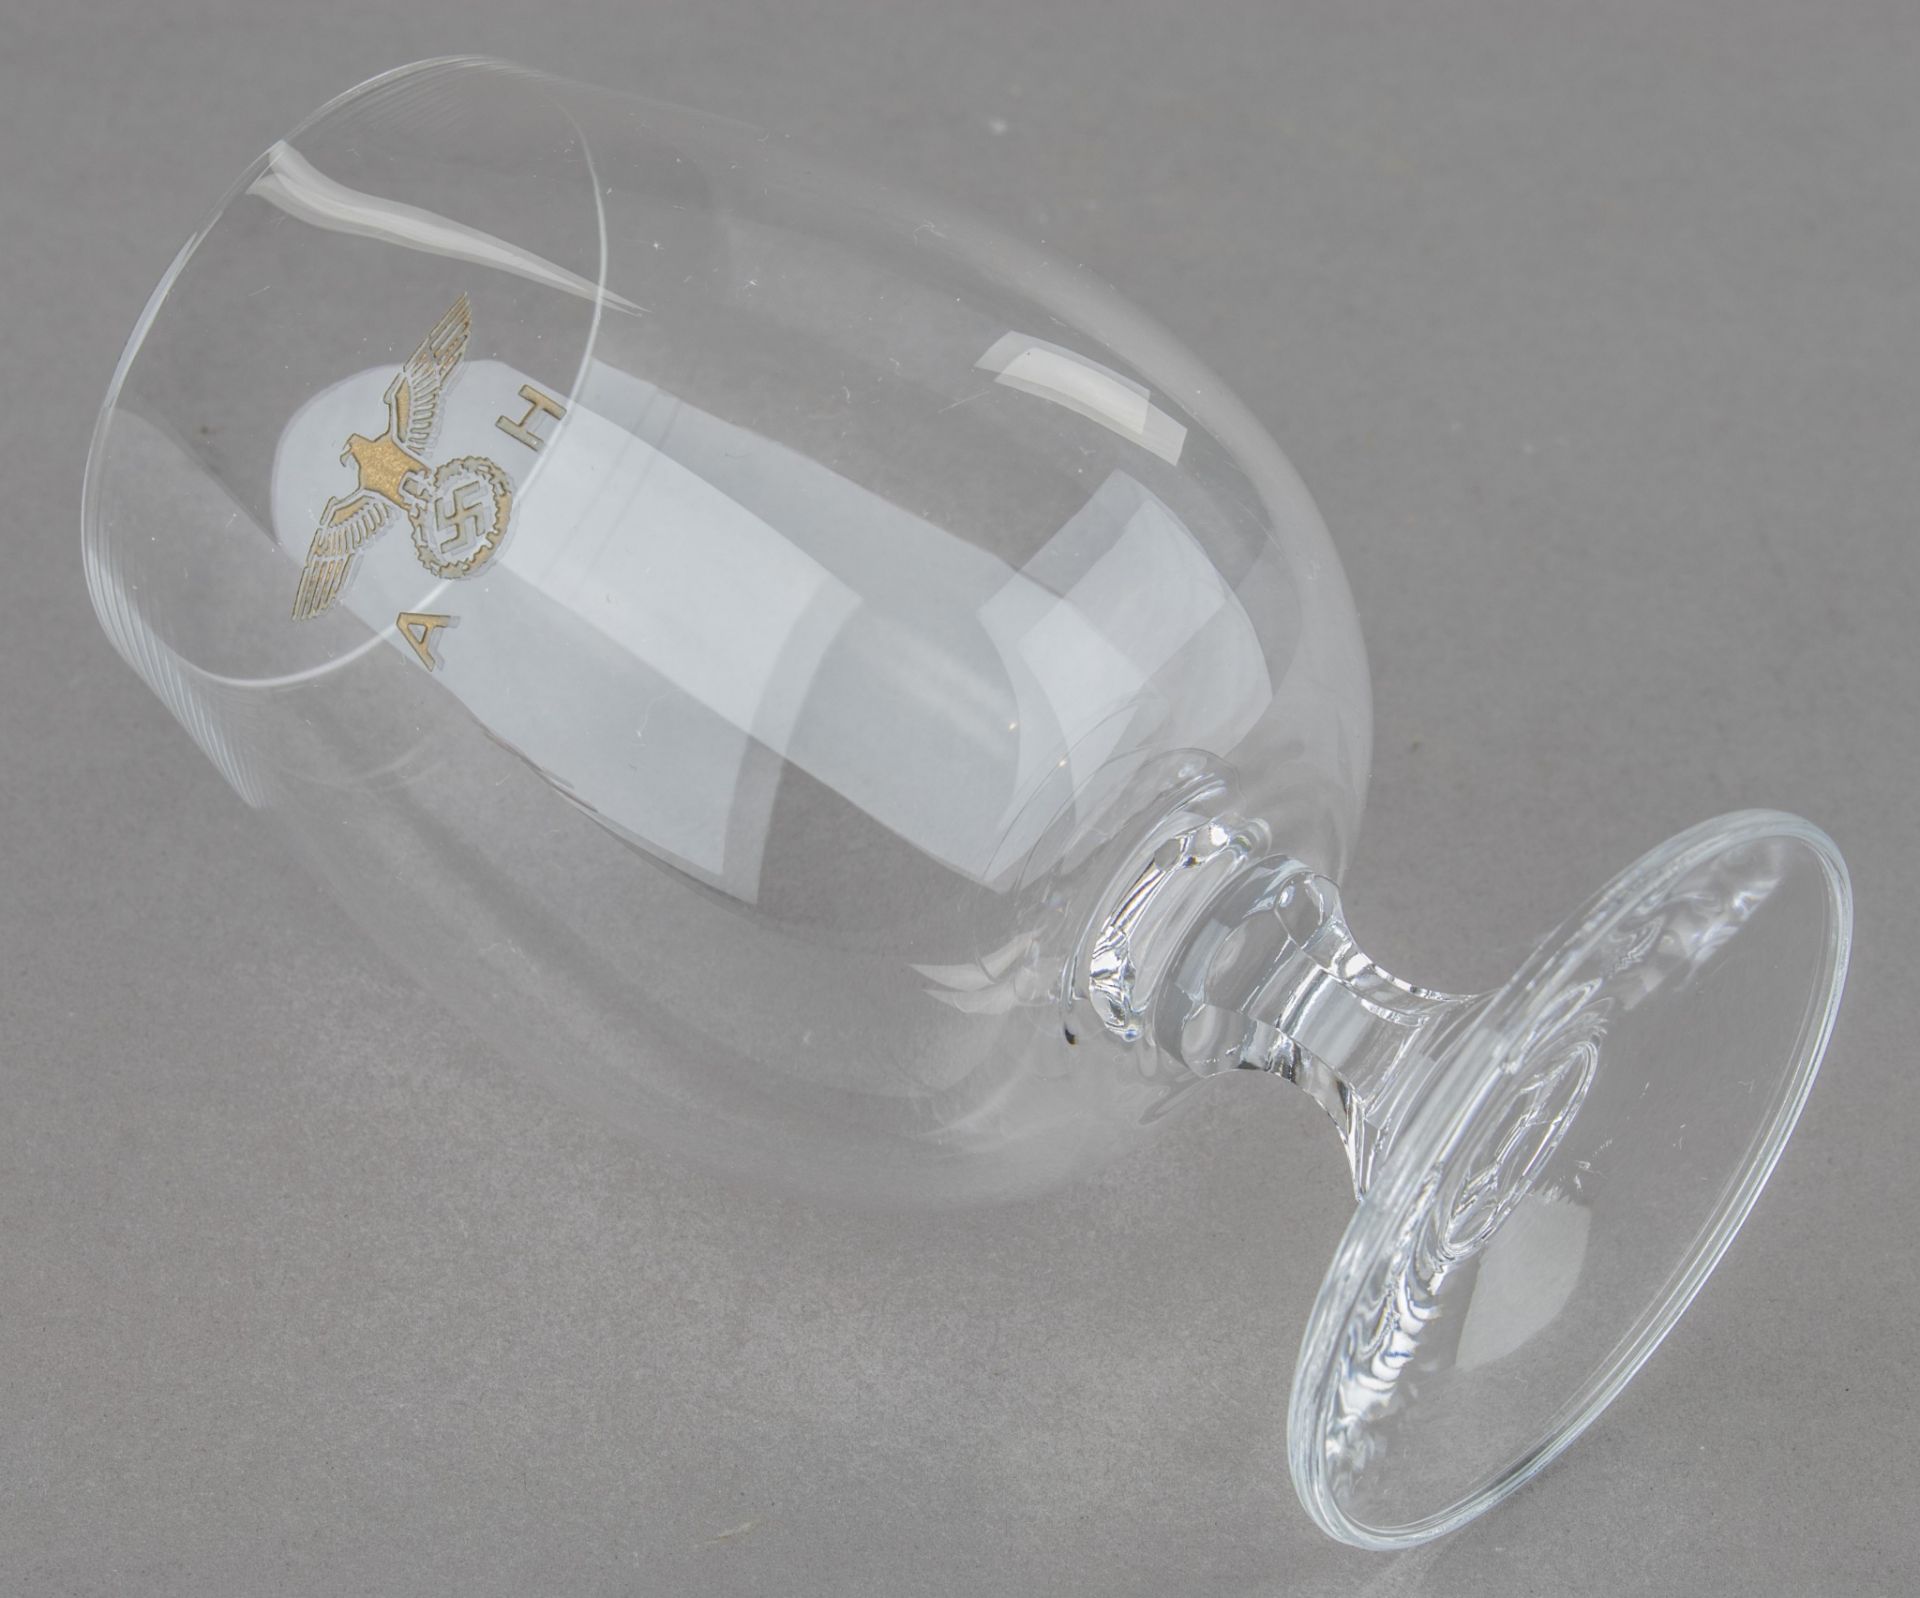 ADOLF HITLER CORDIAL GLASS - Bild 3 aus 4